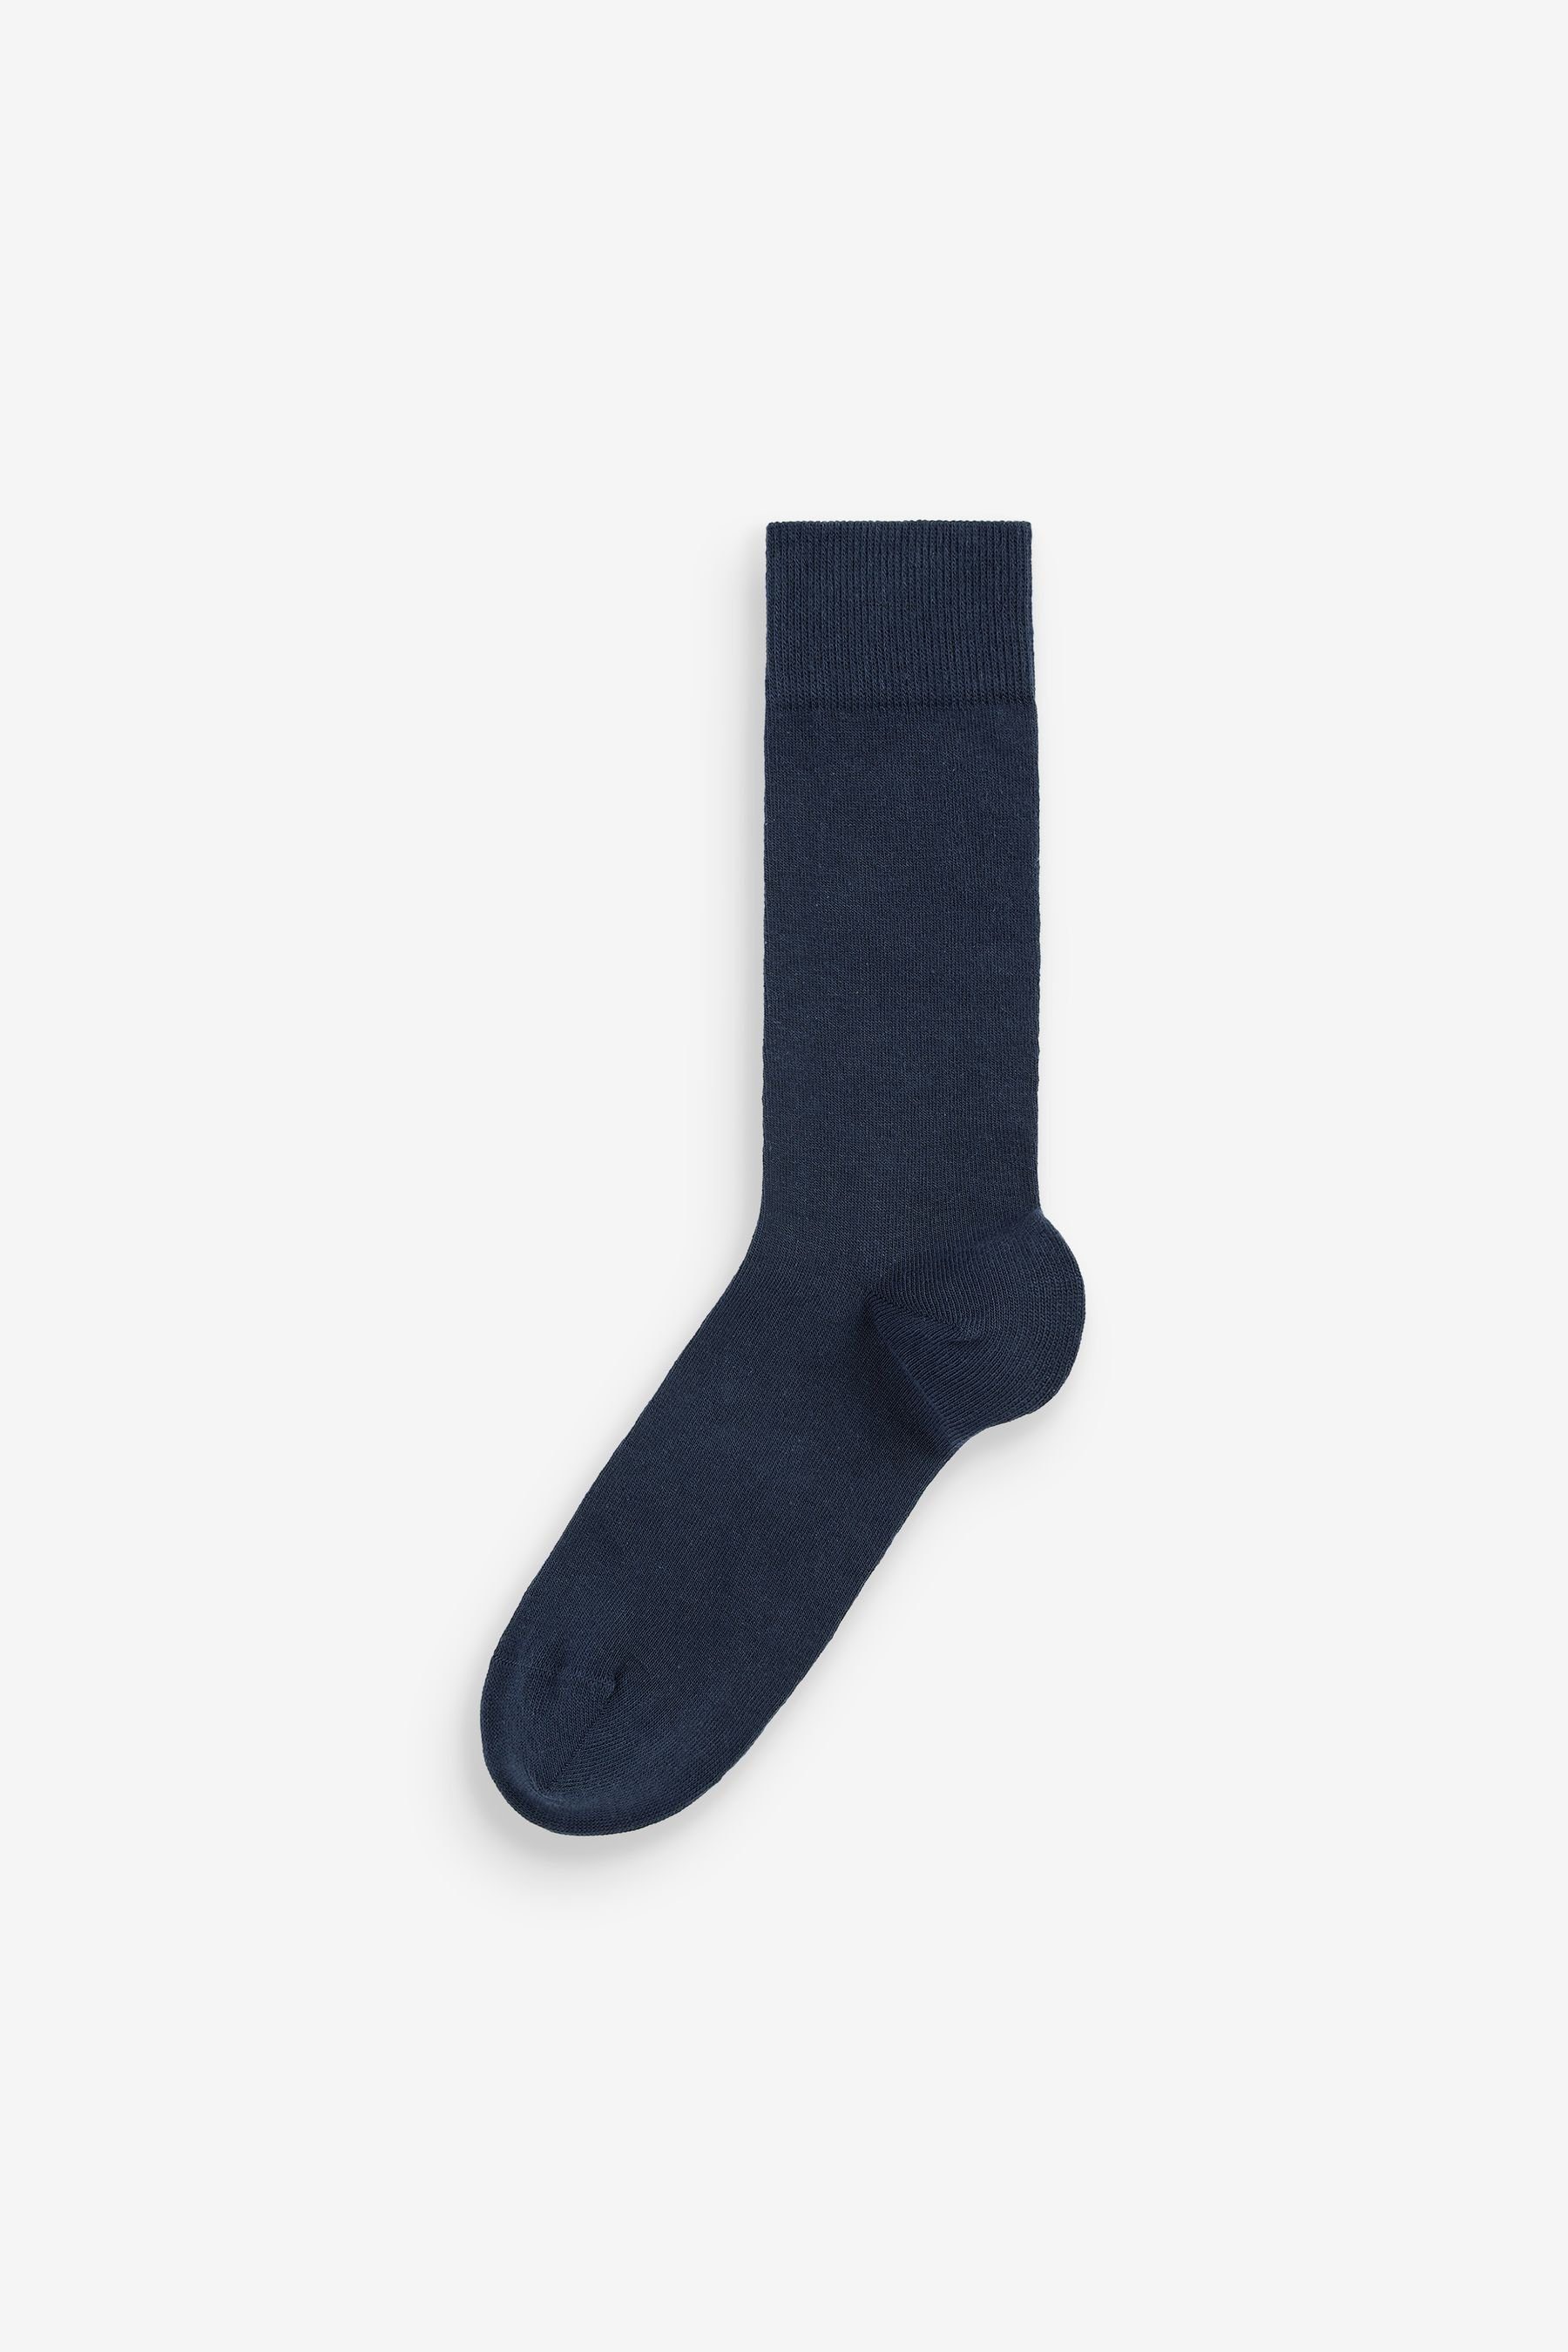 Blue Kurzsocken Navy Essential im 7er-Pack Socken Next (7-Paar)